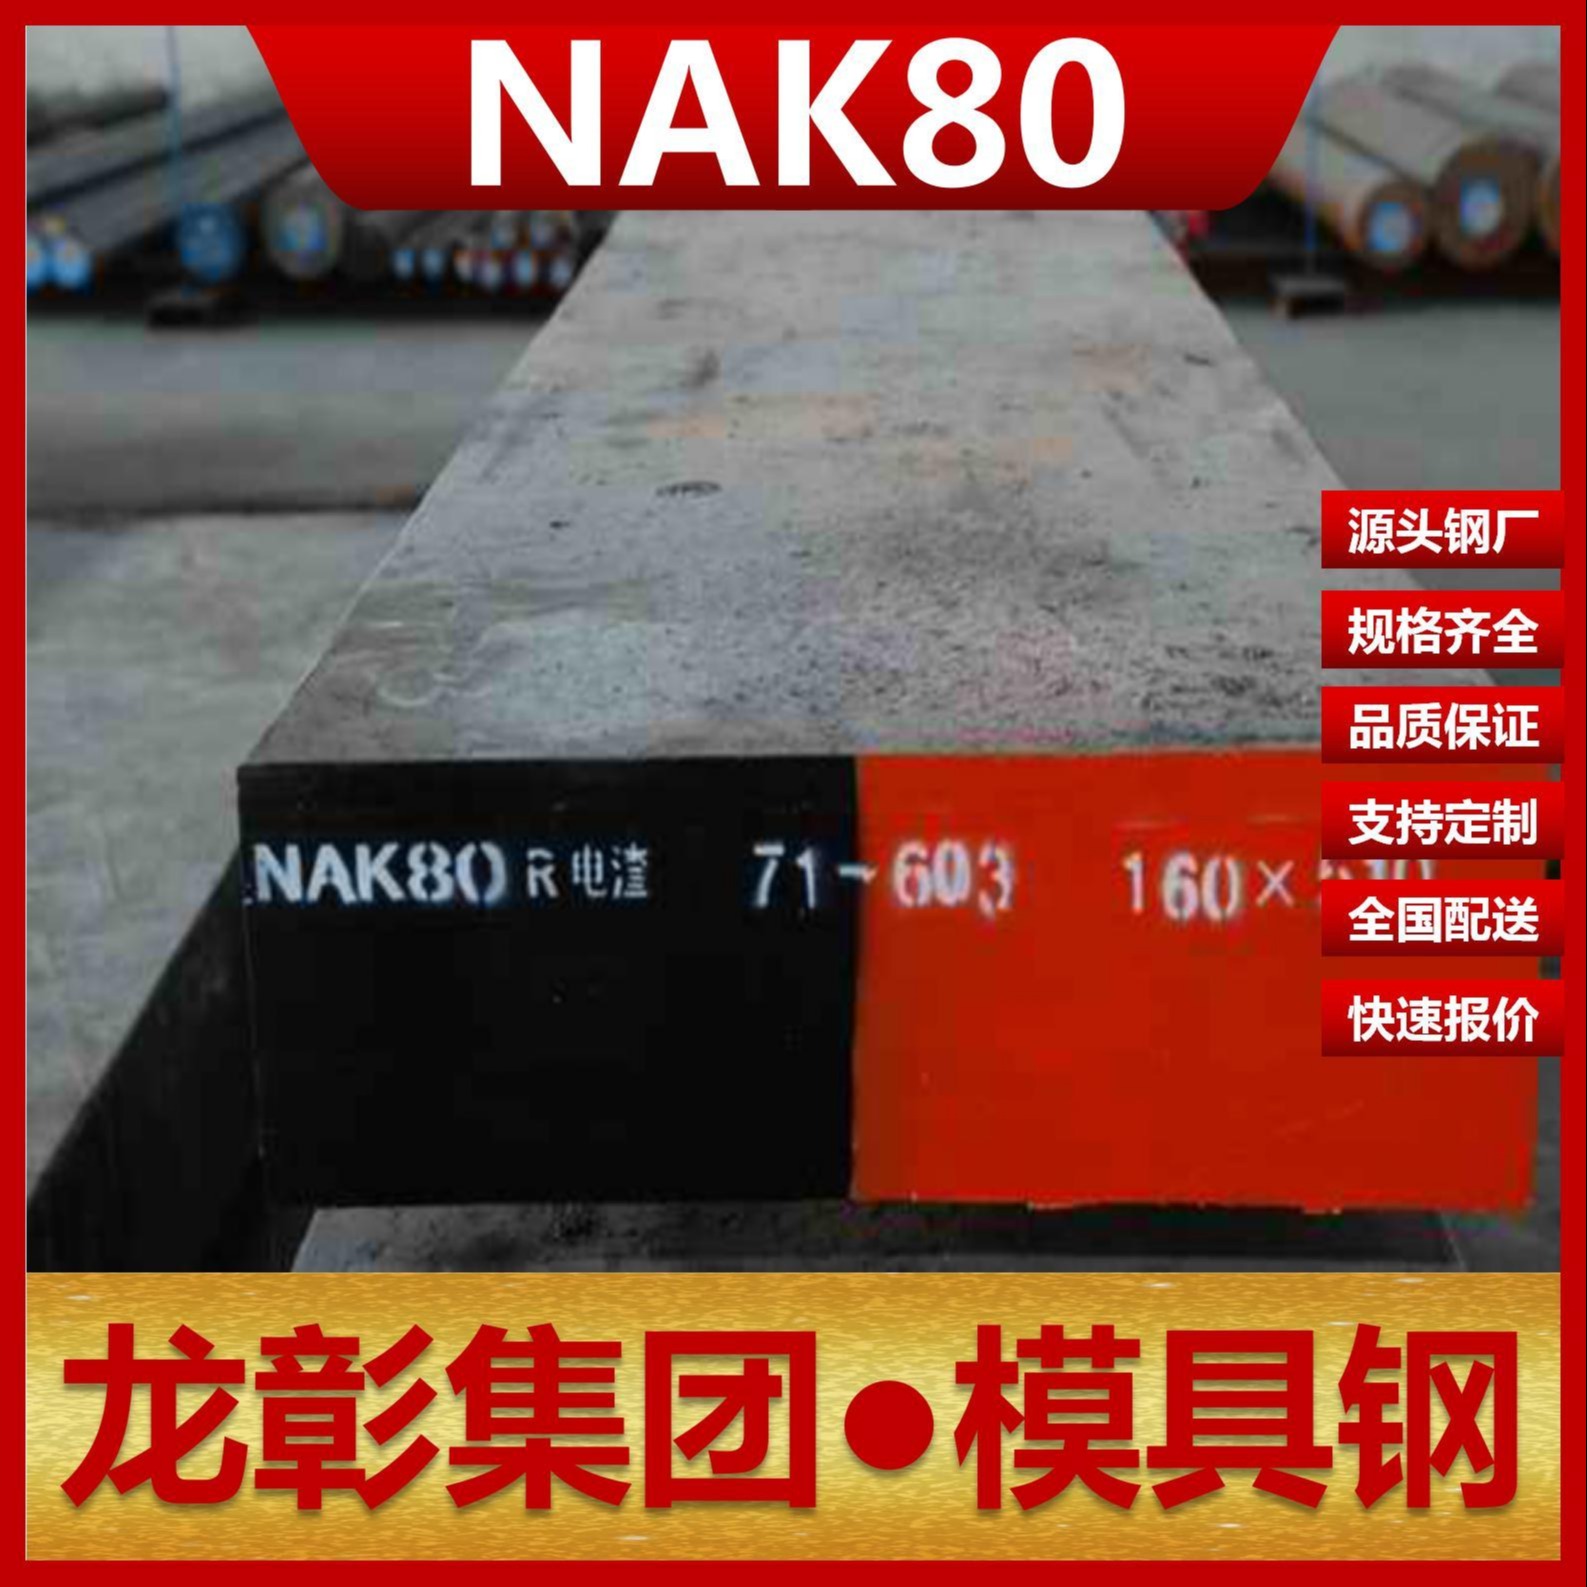 日本NAK80模具钢现货批零 龙彰集团主营NAK80扁钢圆棒模具钢图片